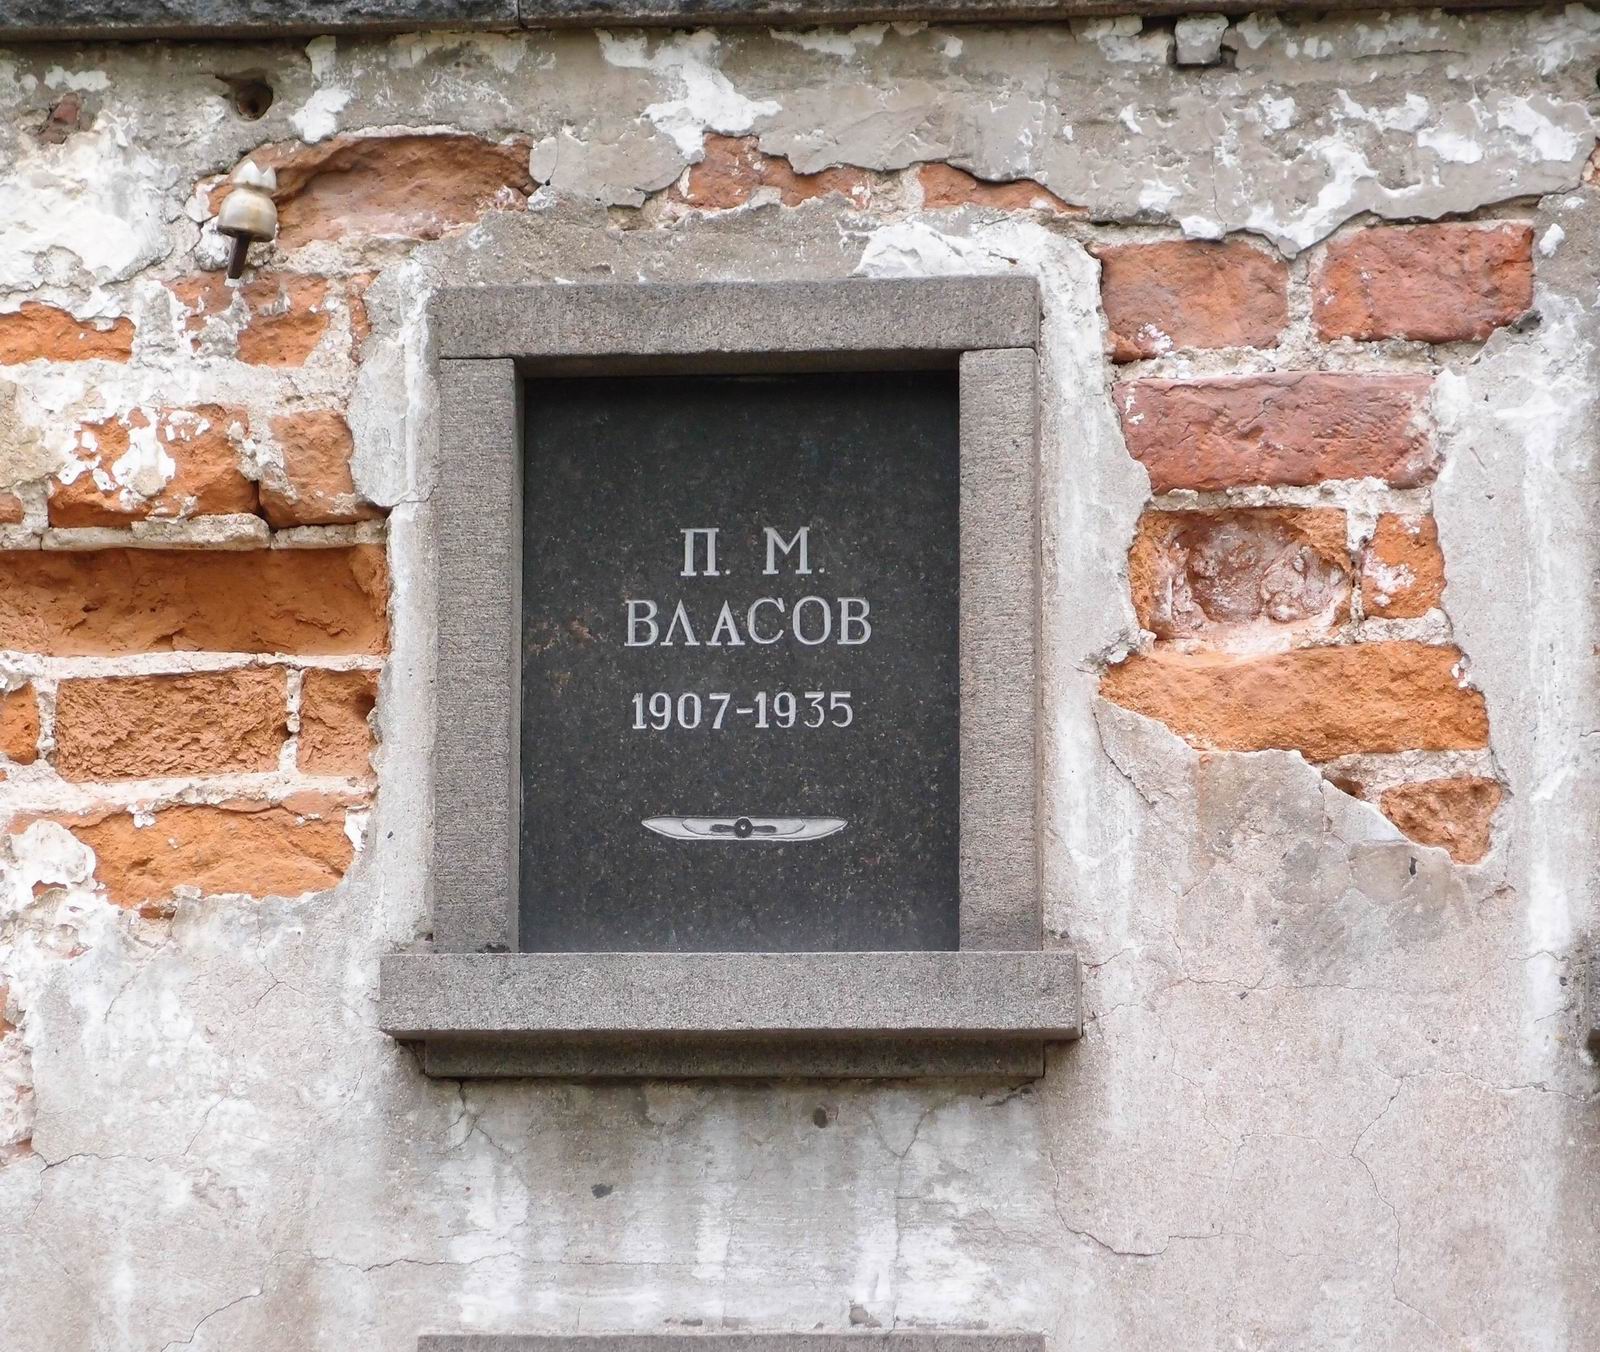 Плита на нише Власова П.М. (1907-1935), на Новодевичьем кладбище (колумбарий [3]-1). Нажмите левую кнопку мыши, чтобы увидеть общий вид секции.